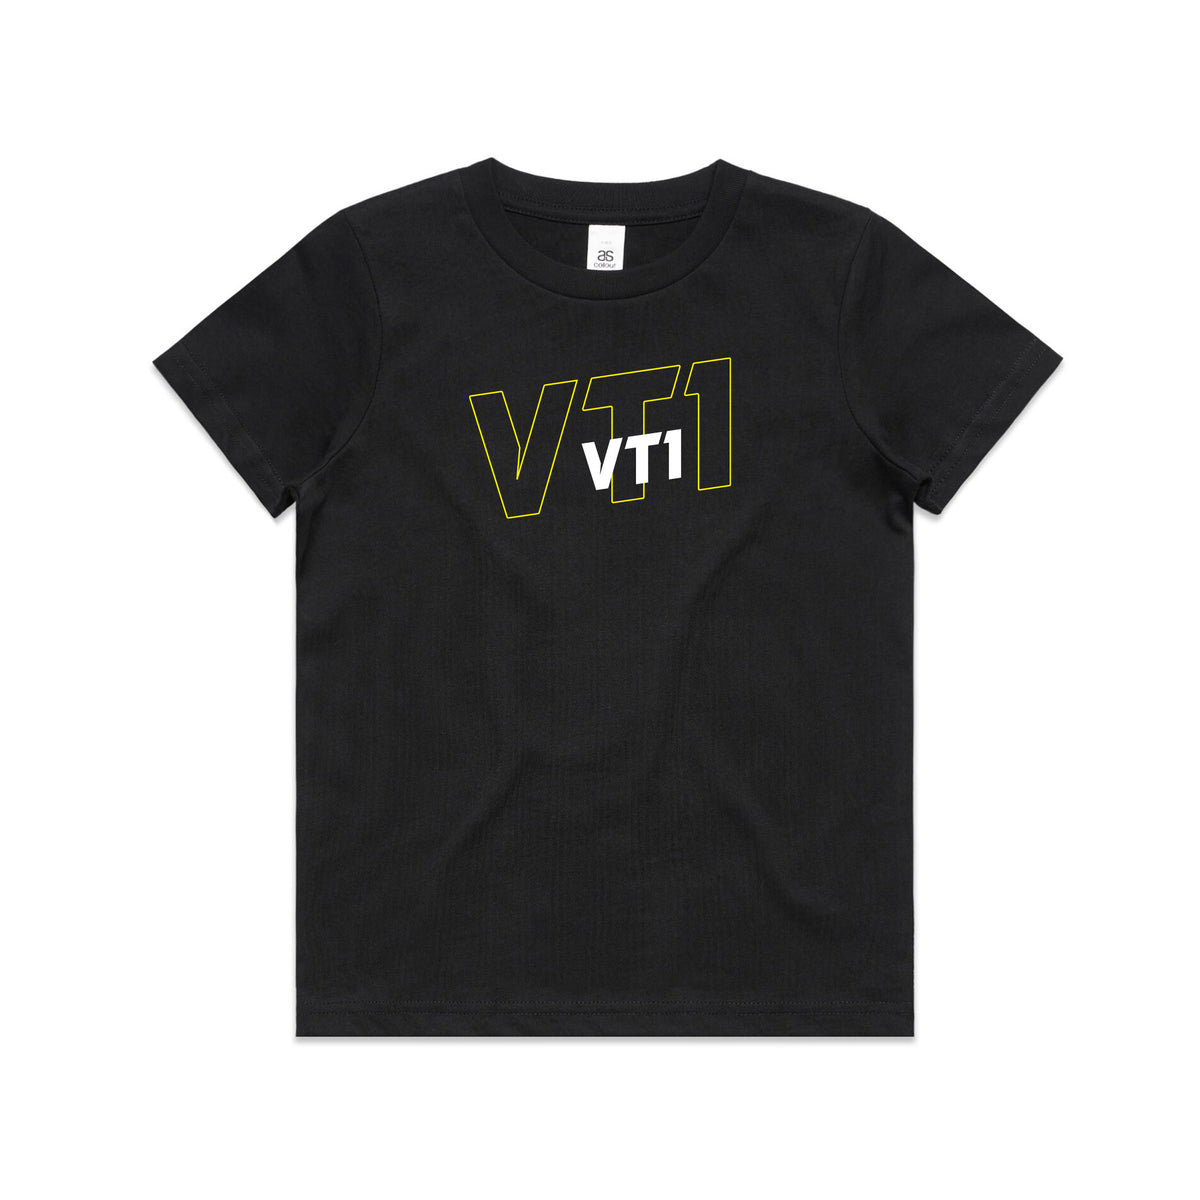 VT1 Sports Print T-Shirt - Youth